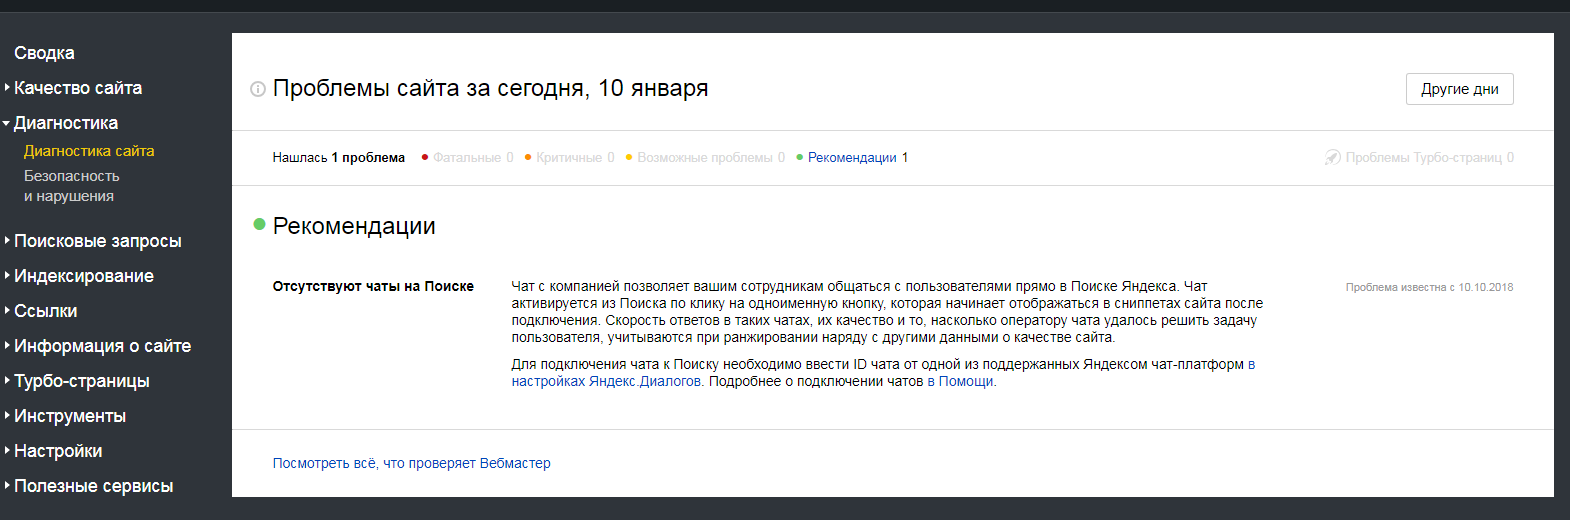 Яндекс.Вебмастер рекомендует установить диалоги